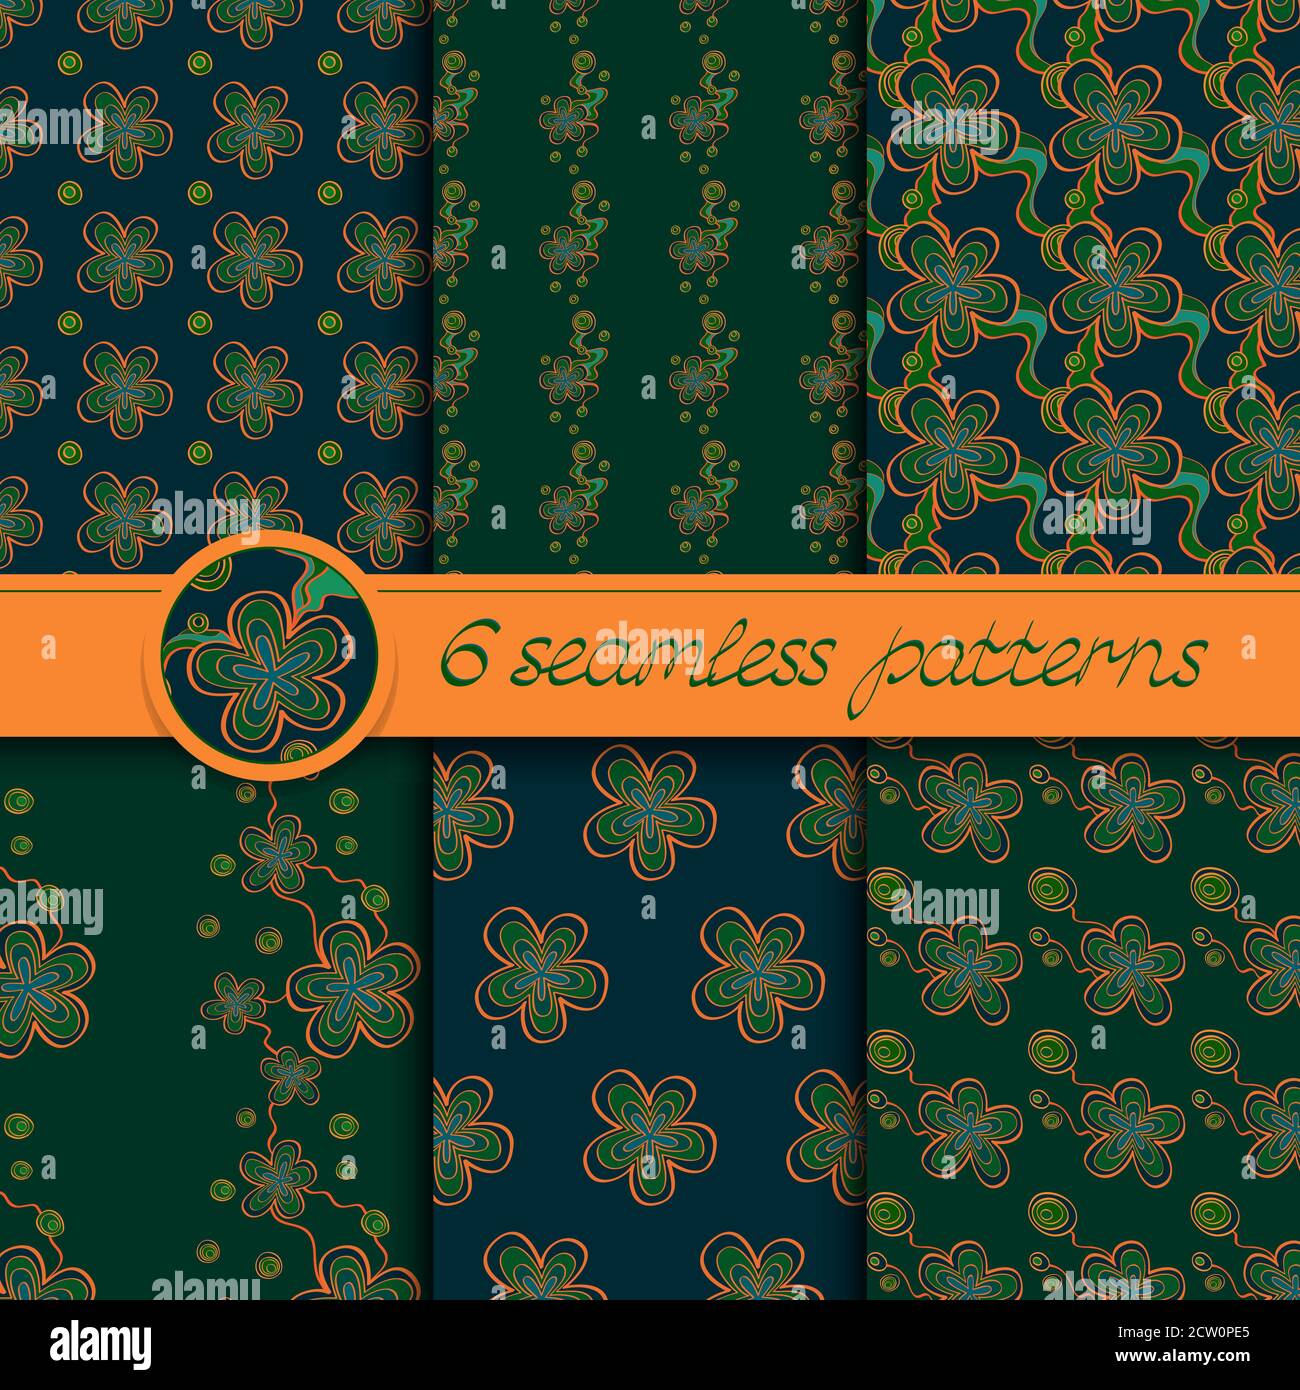 Serie vettoriale di motivi senza cuciture con elementi floreali. Raccolta di motivi in verde e arancione. Illustrazione Vettoriale